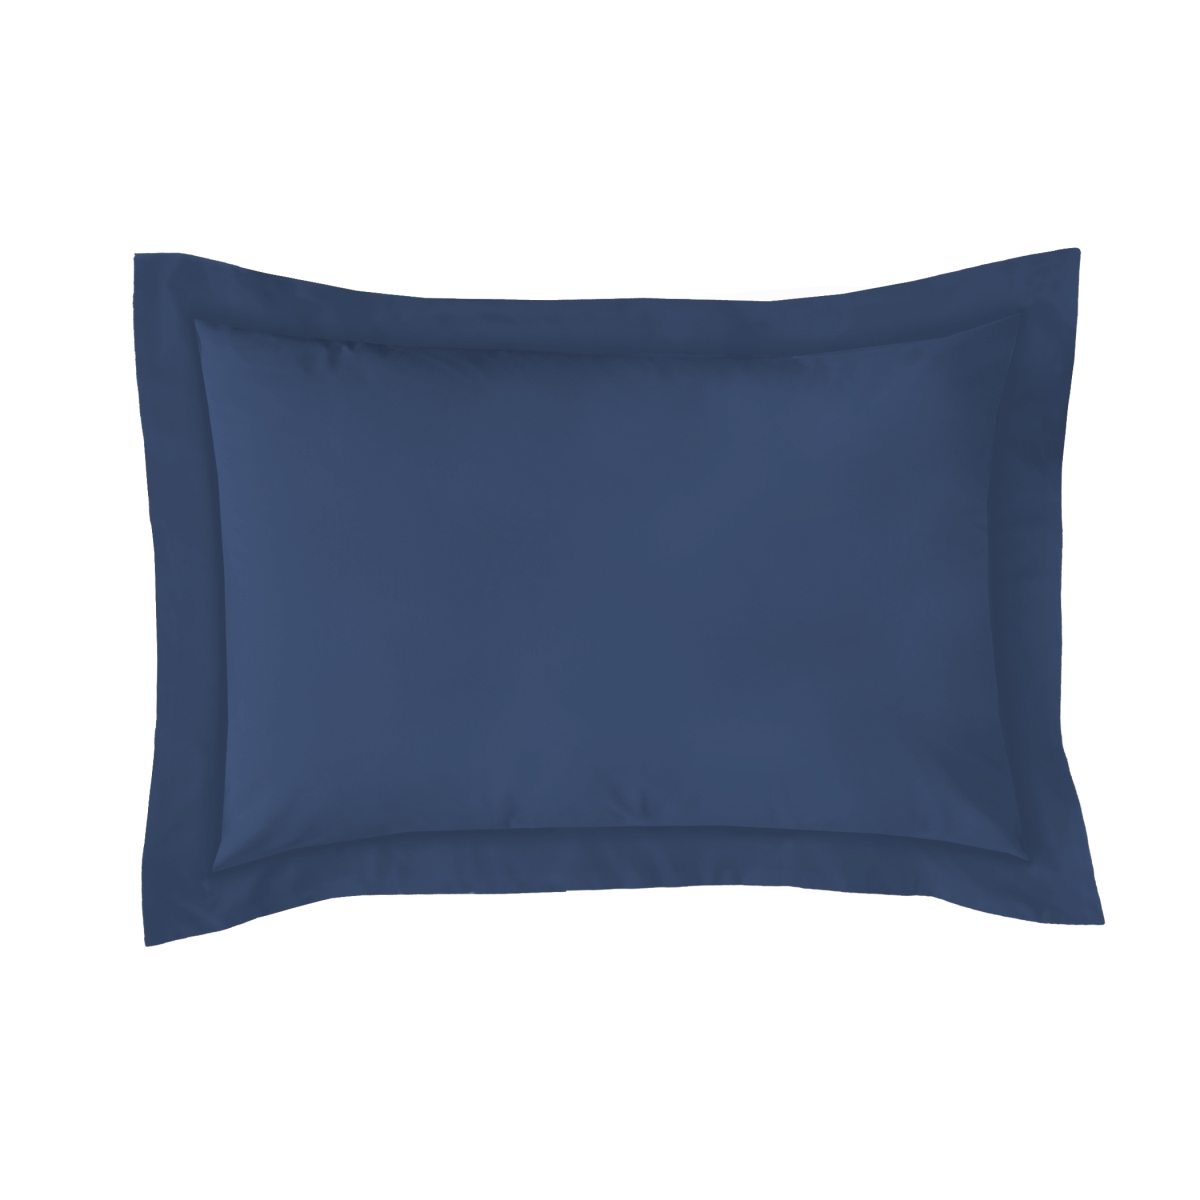 Fre201xxnavy07 Poplin Tailored Pillow Sham Navy - Standard